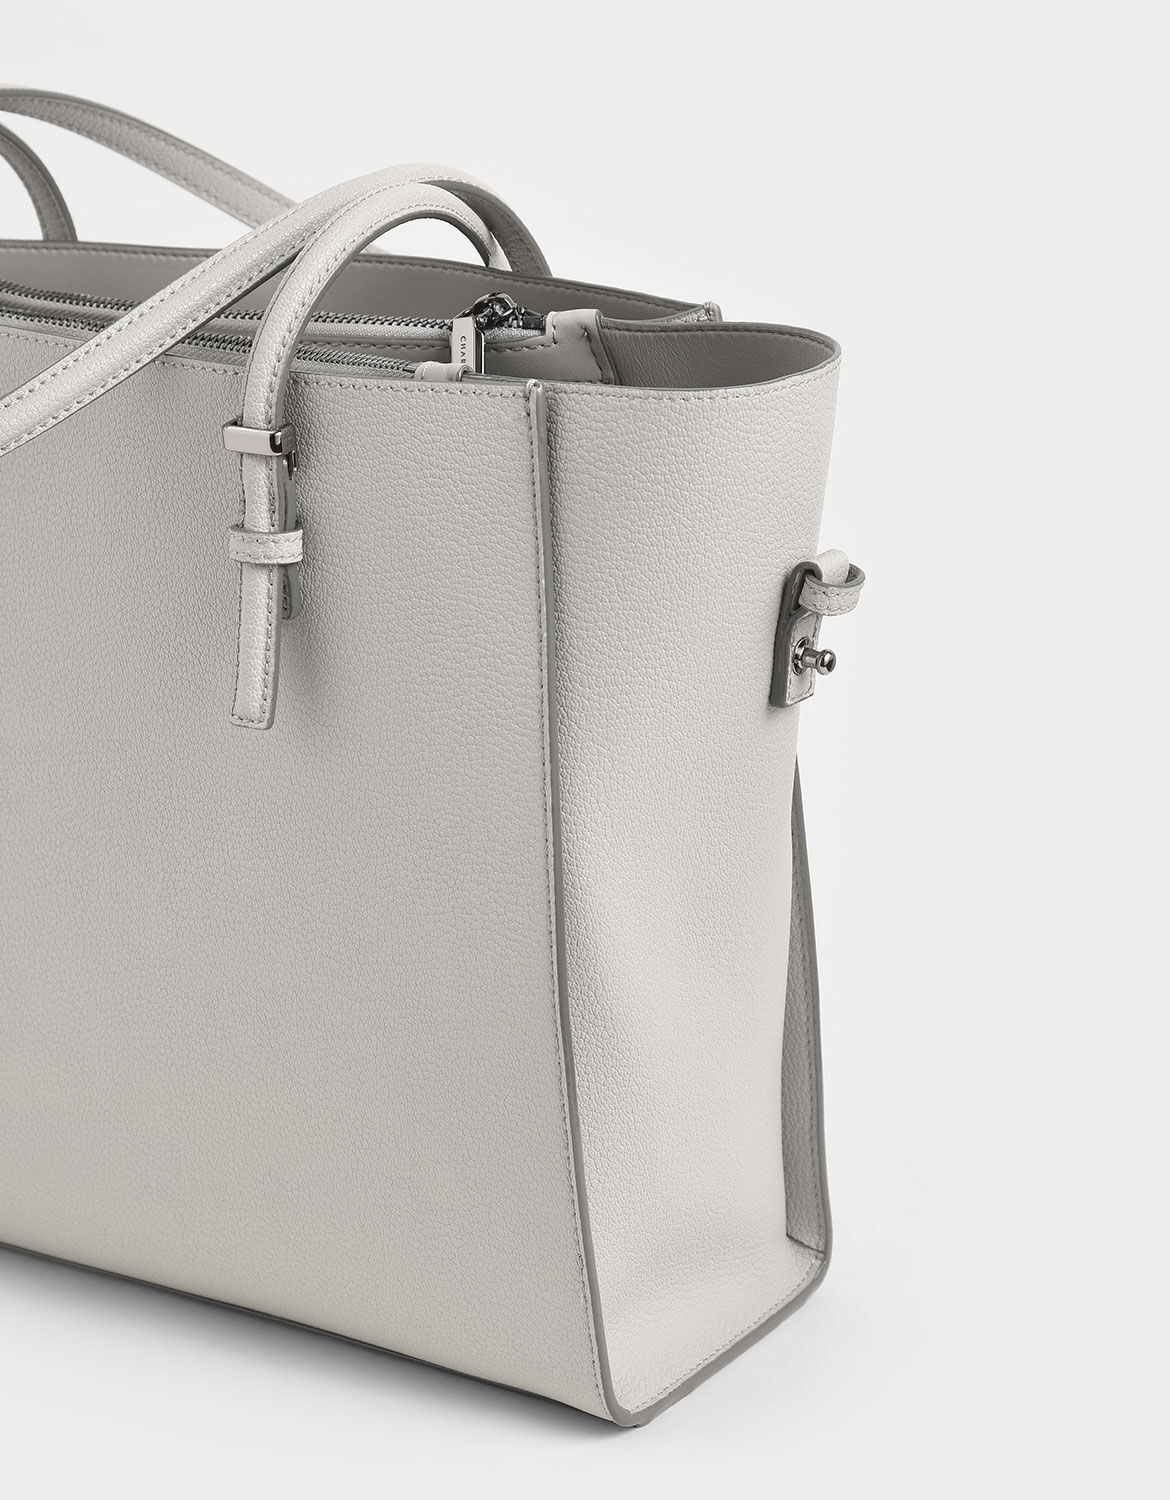 How Much Is A Birkin Bag? | myGemma